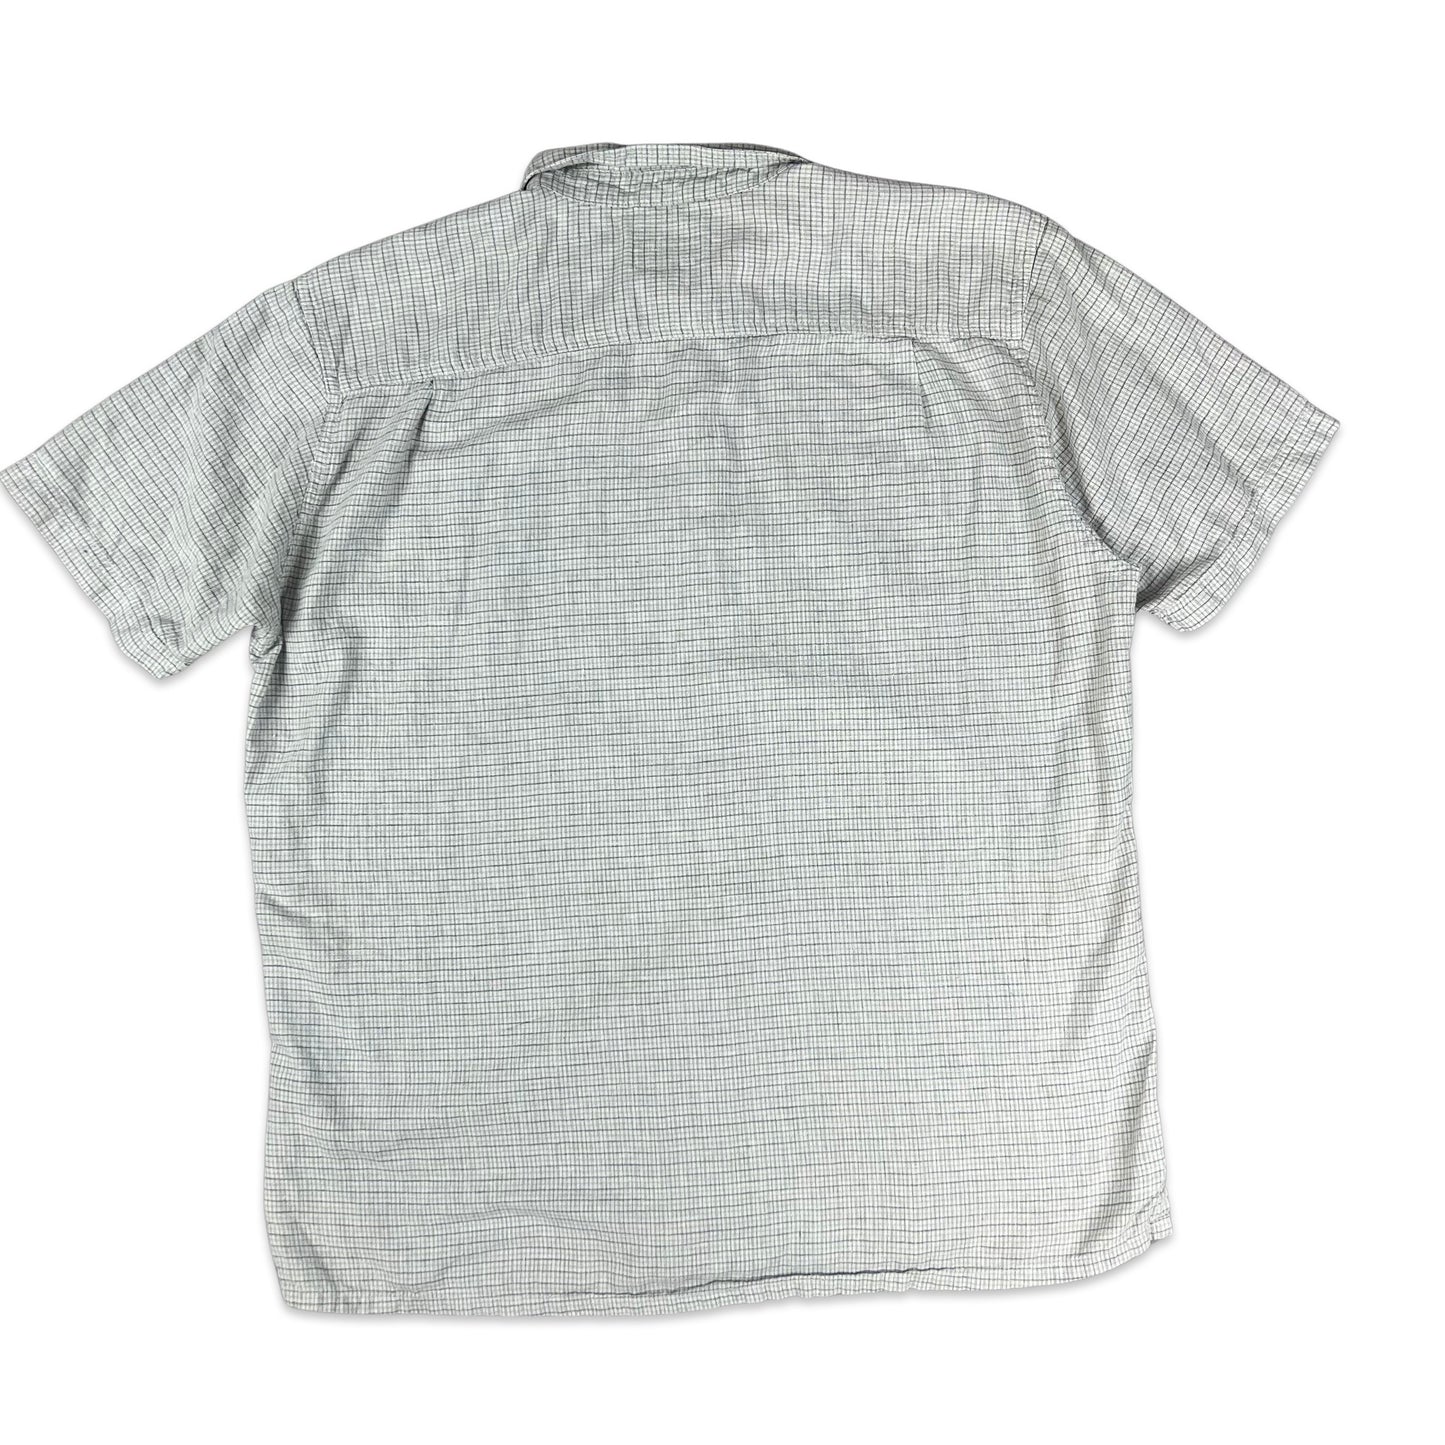 00s Patagonia White Grey Check Shirt L XL